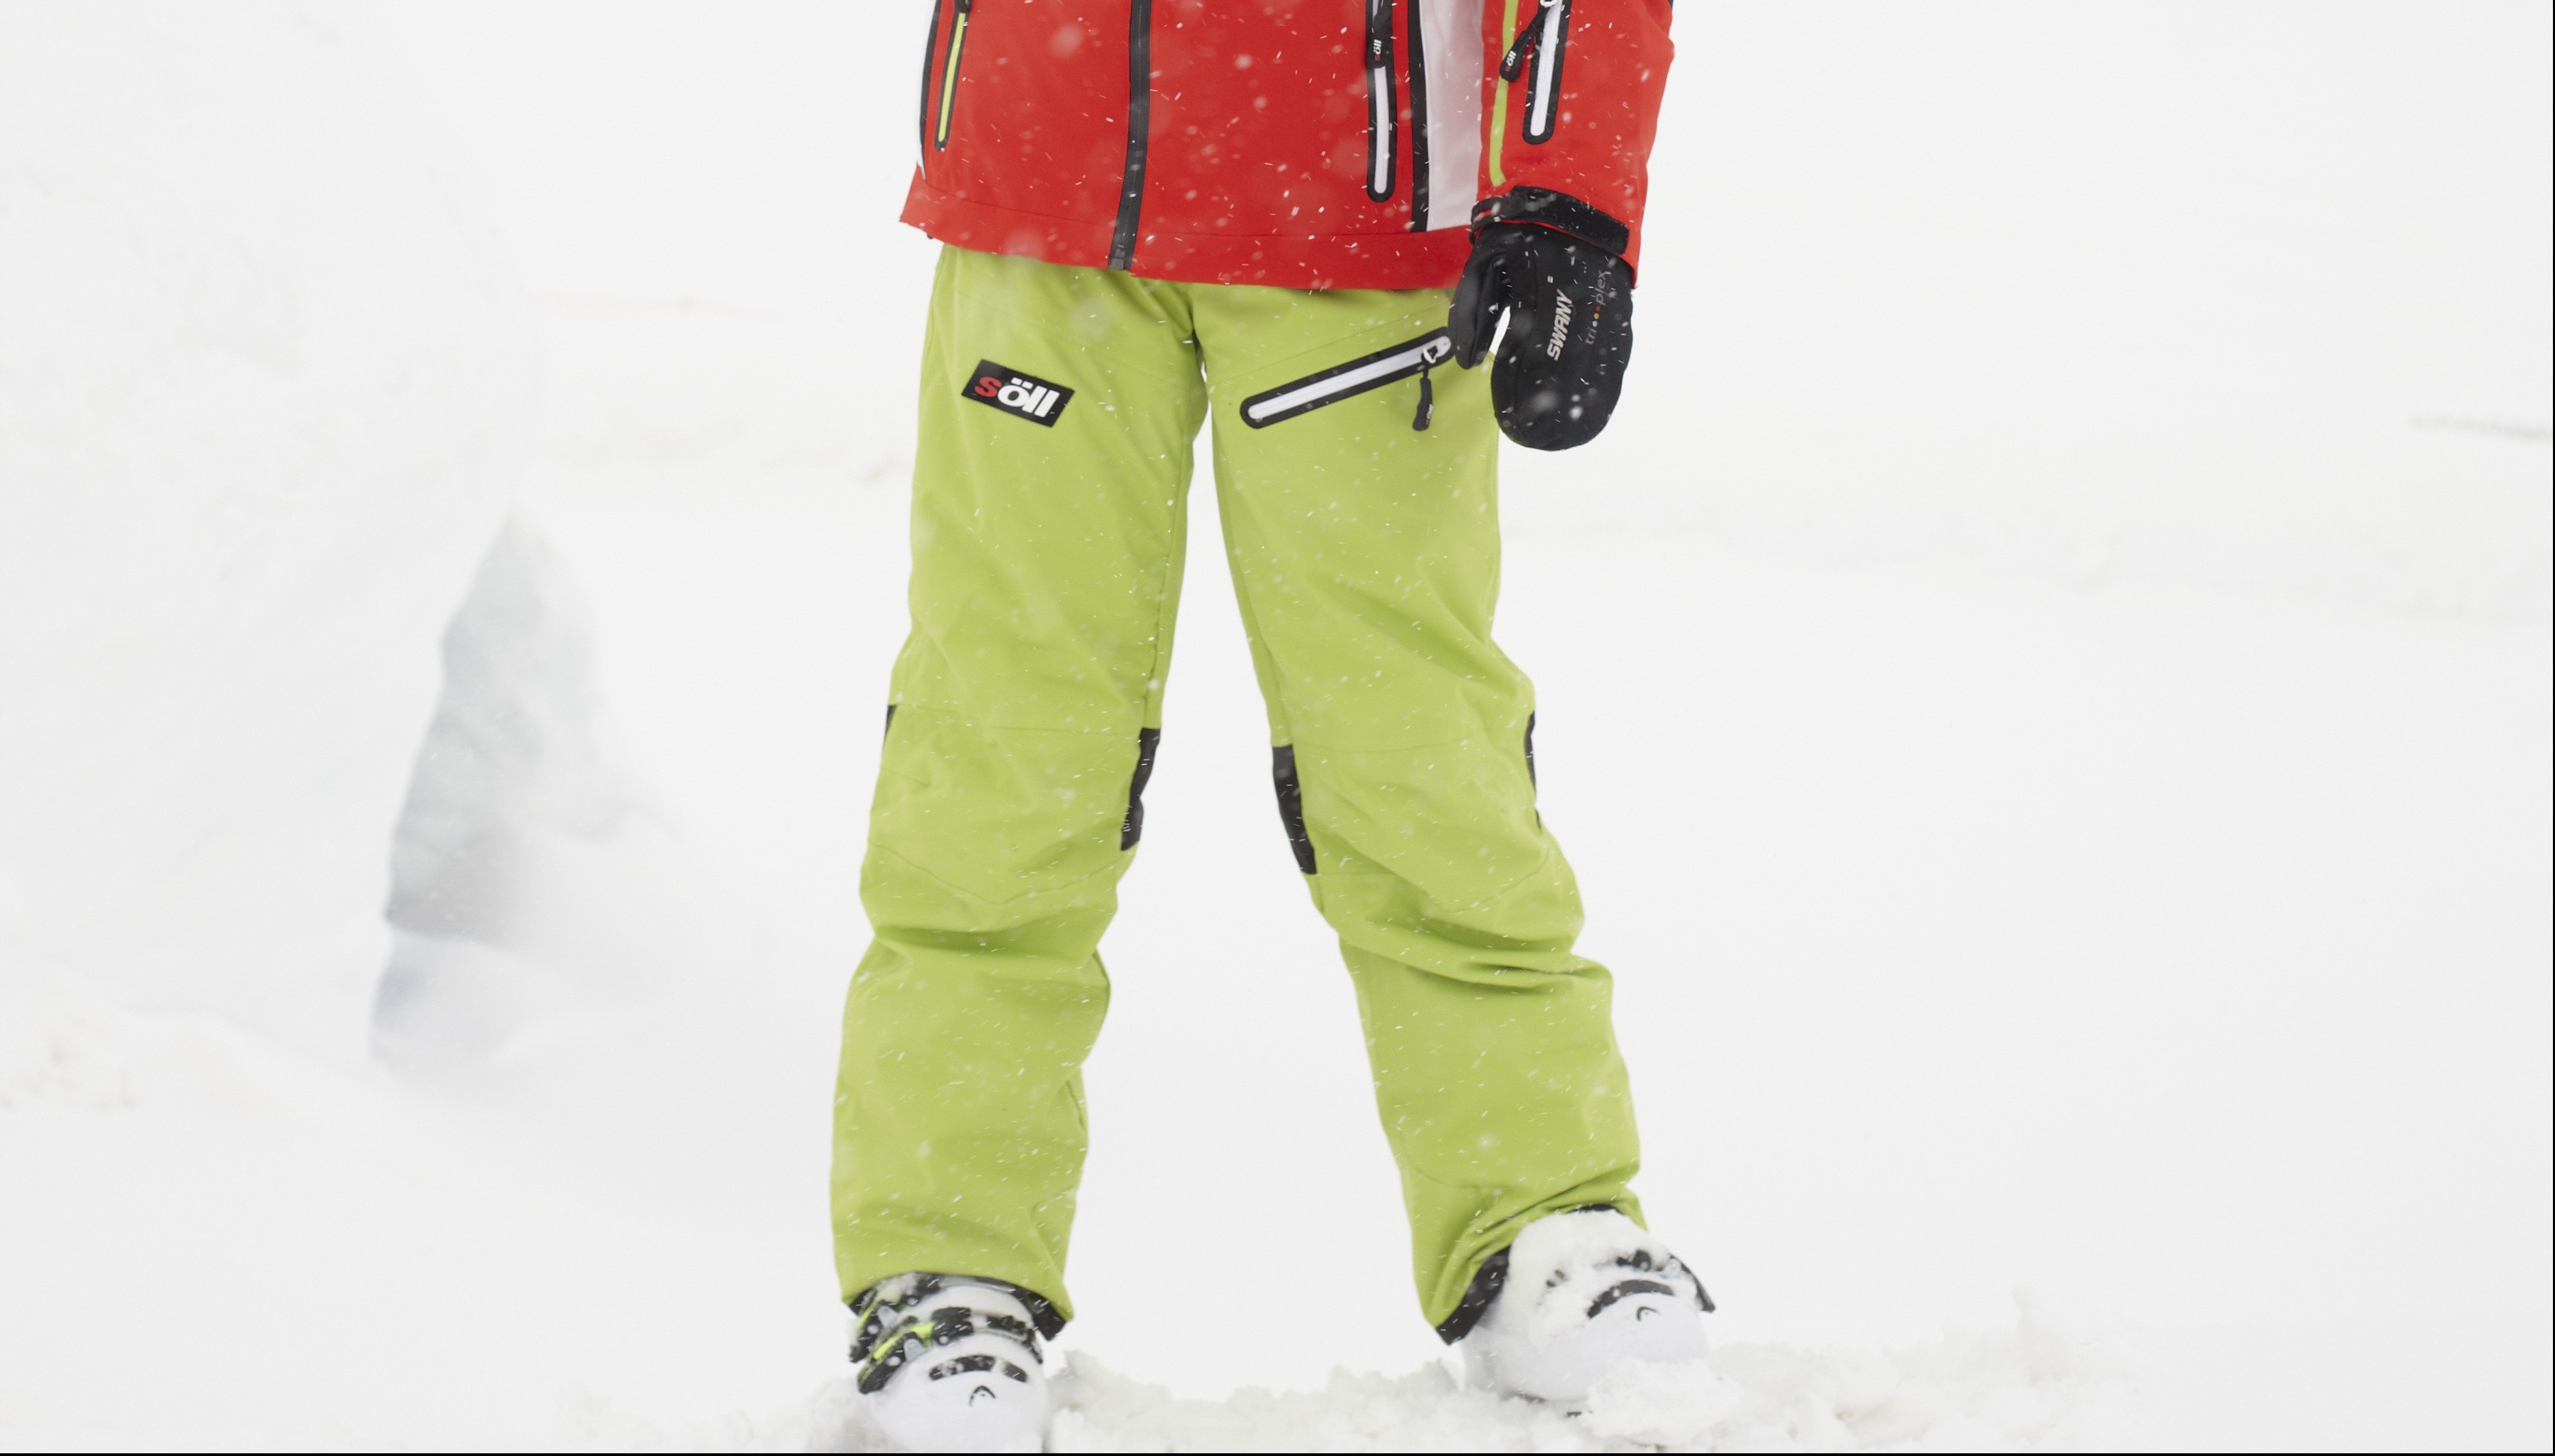 Conoces ya los pantalones de esquí ajustados?